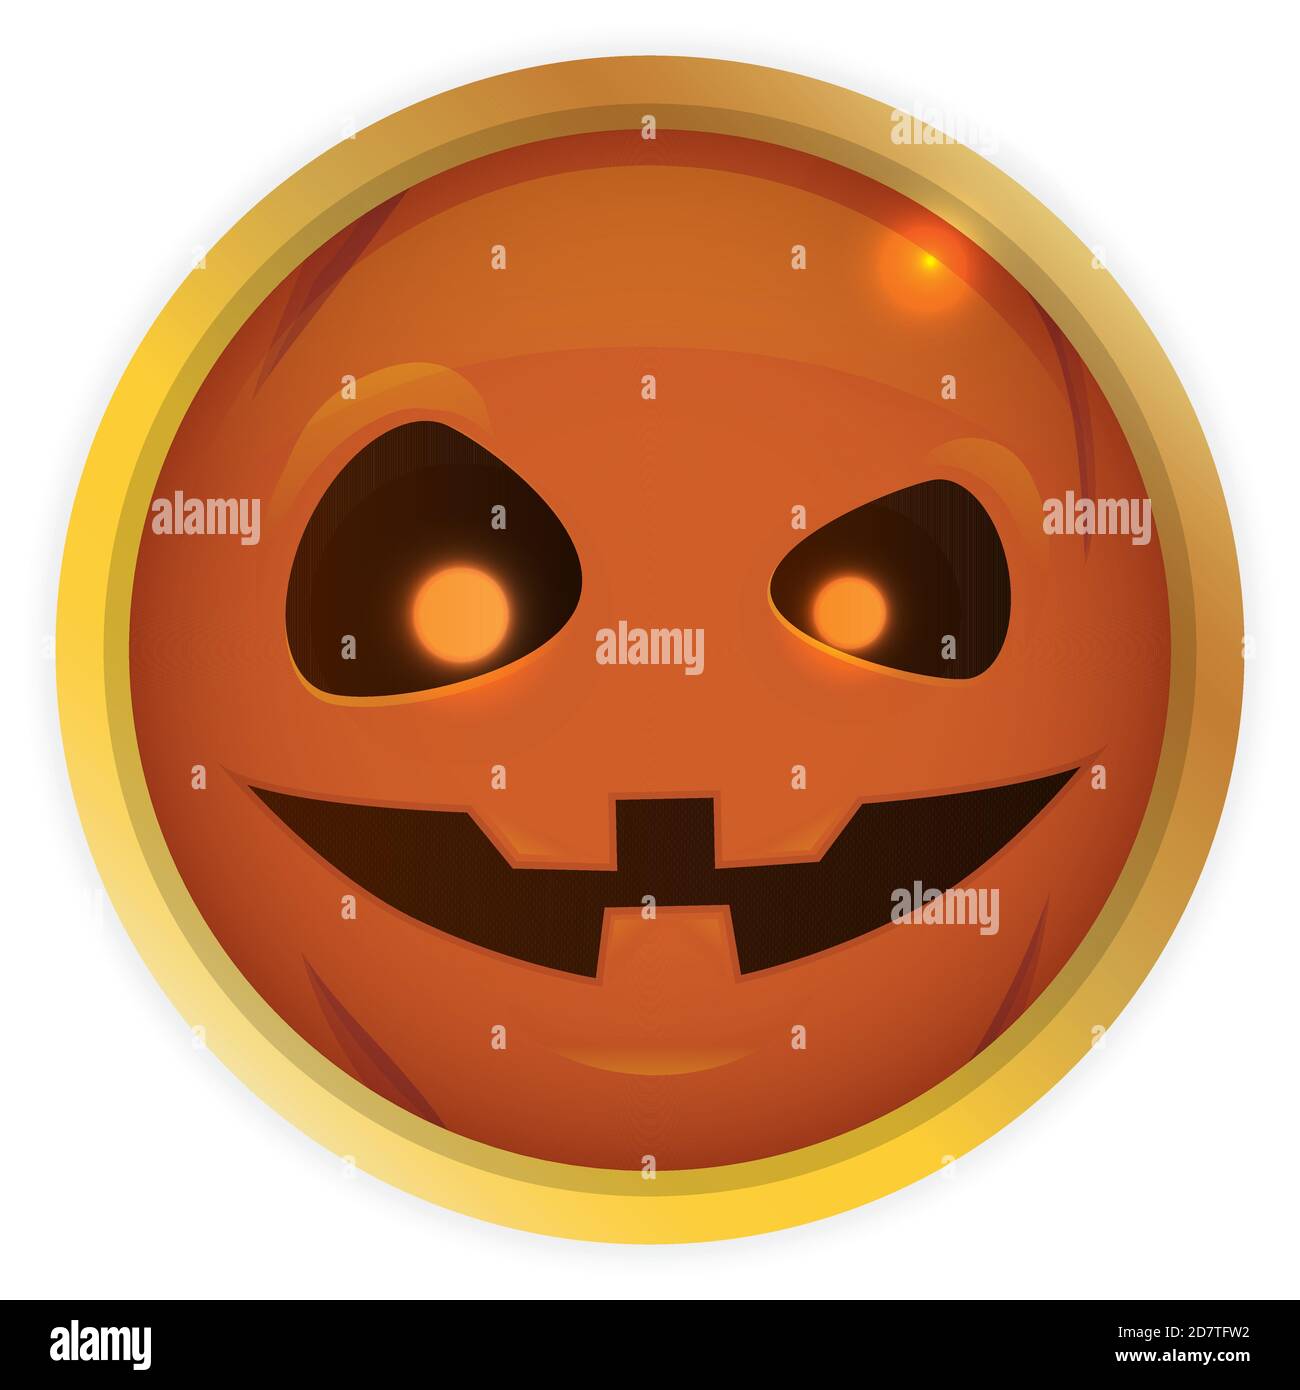 Bottone rotondo dorato con la faccia della zucca di Halloween con gli occhi luminosi all'interno di esso, isolato su sfondo bianco. Illustrazione Vettoriale